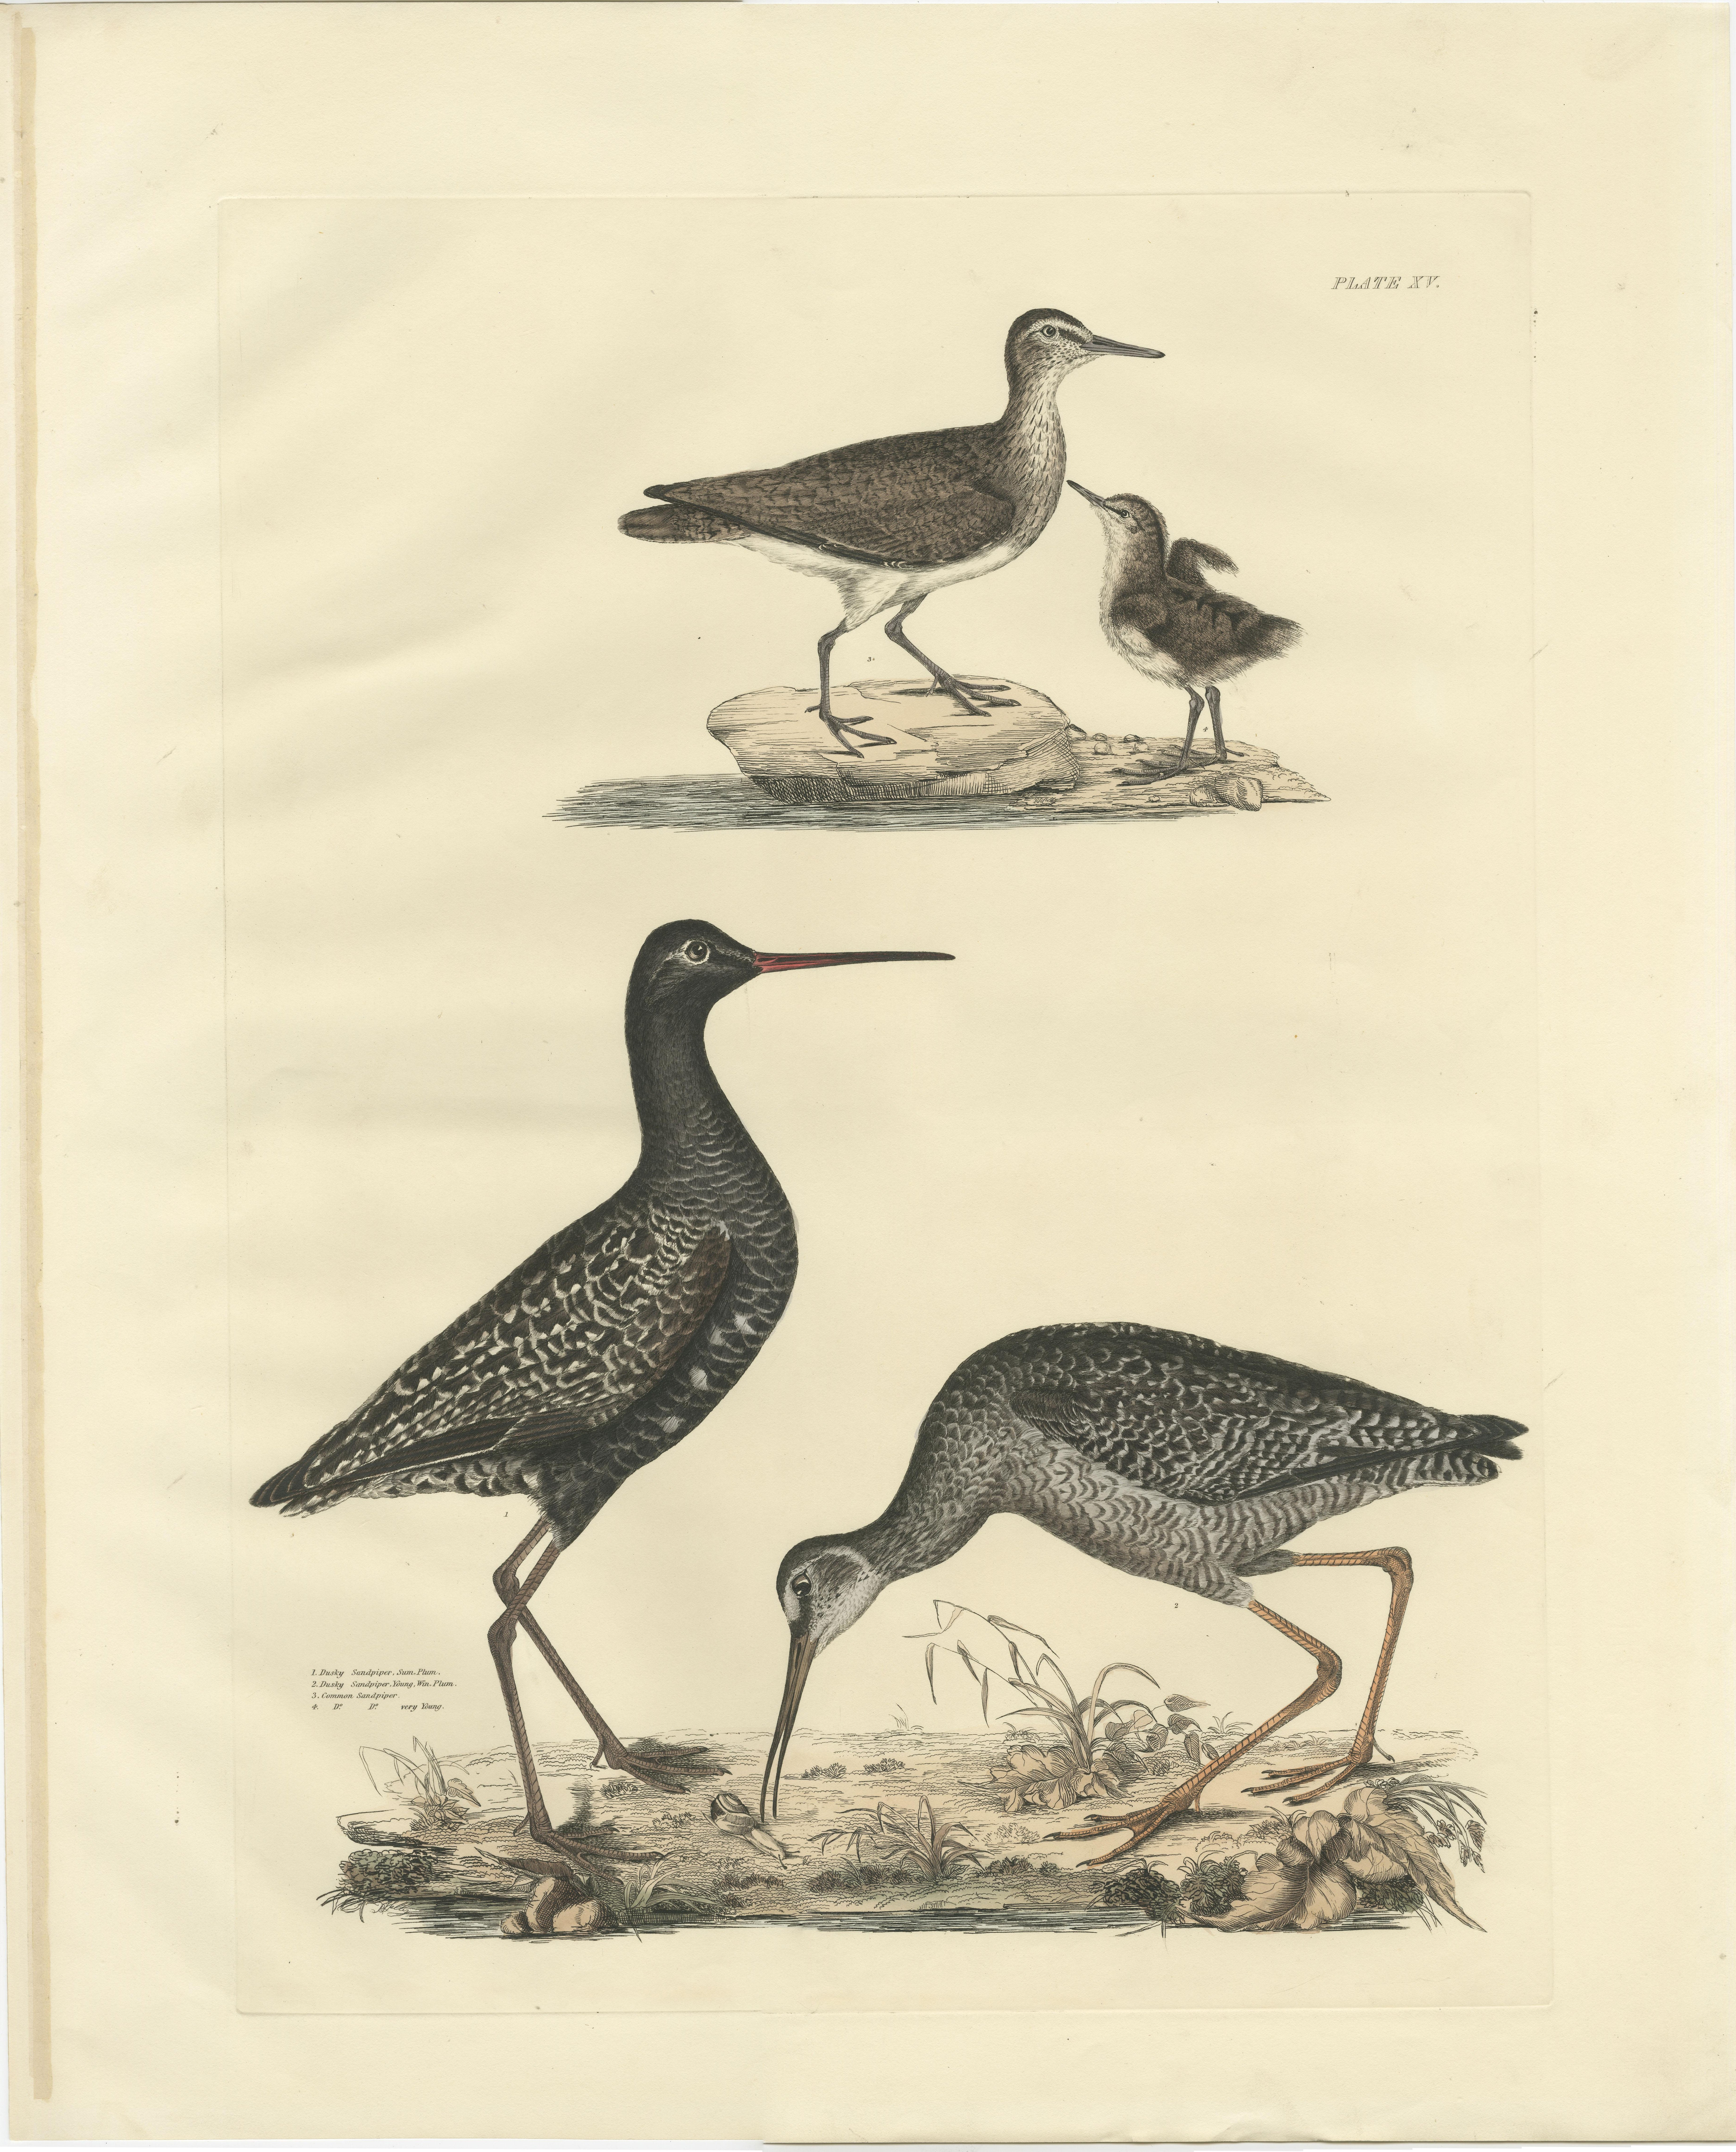 Grande estampe ornithologique originale colorée à la main, réalisée par Selby et publiée vers 1826. 

Cette estampe tirée des 